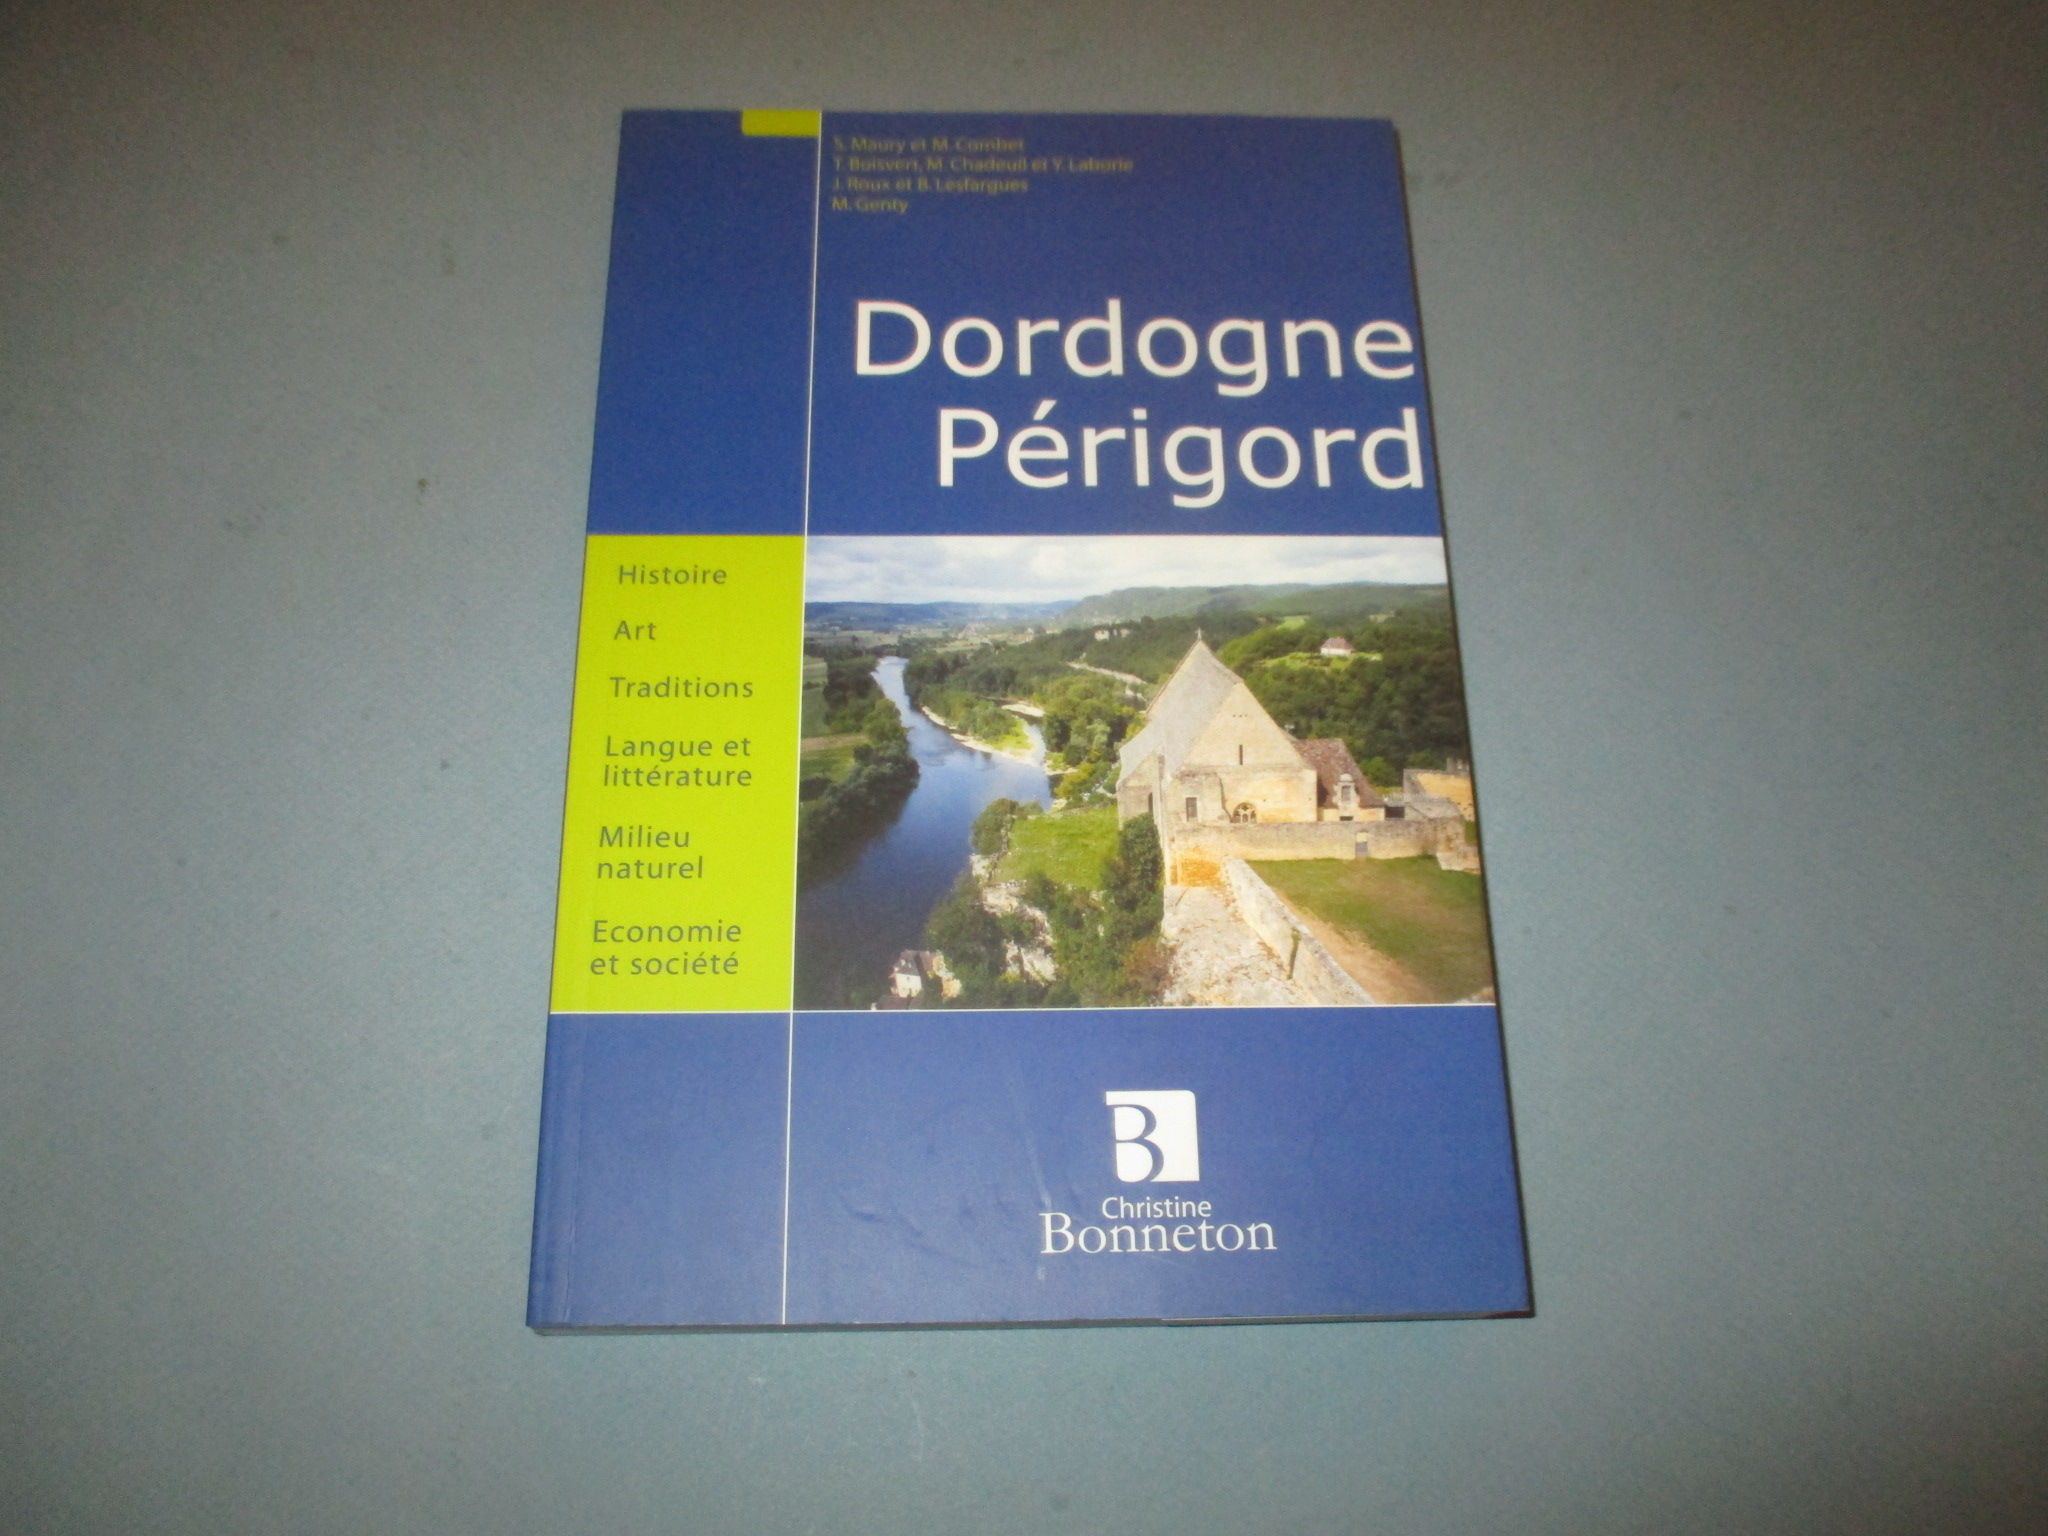 Dordogne Périgord, Encyclopédie Bonneton, Histoire Art Traditions Economie, Bonneton 2007